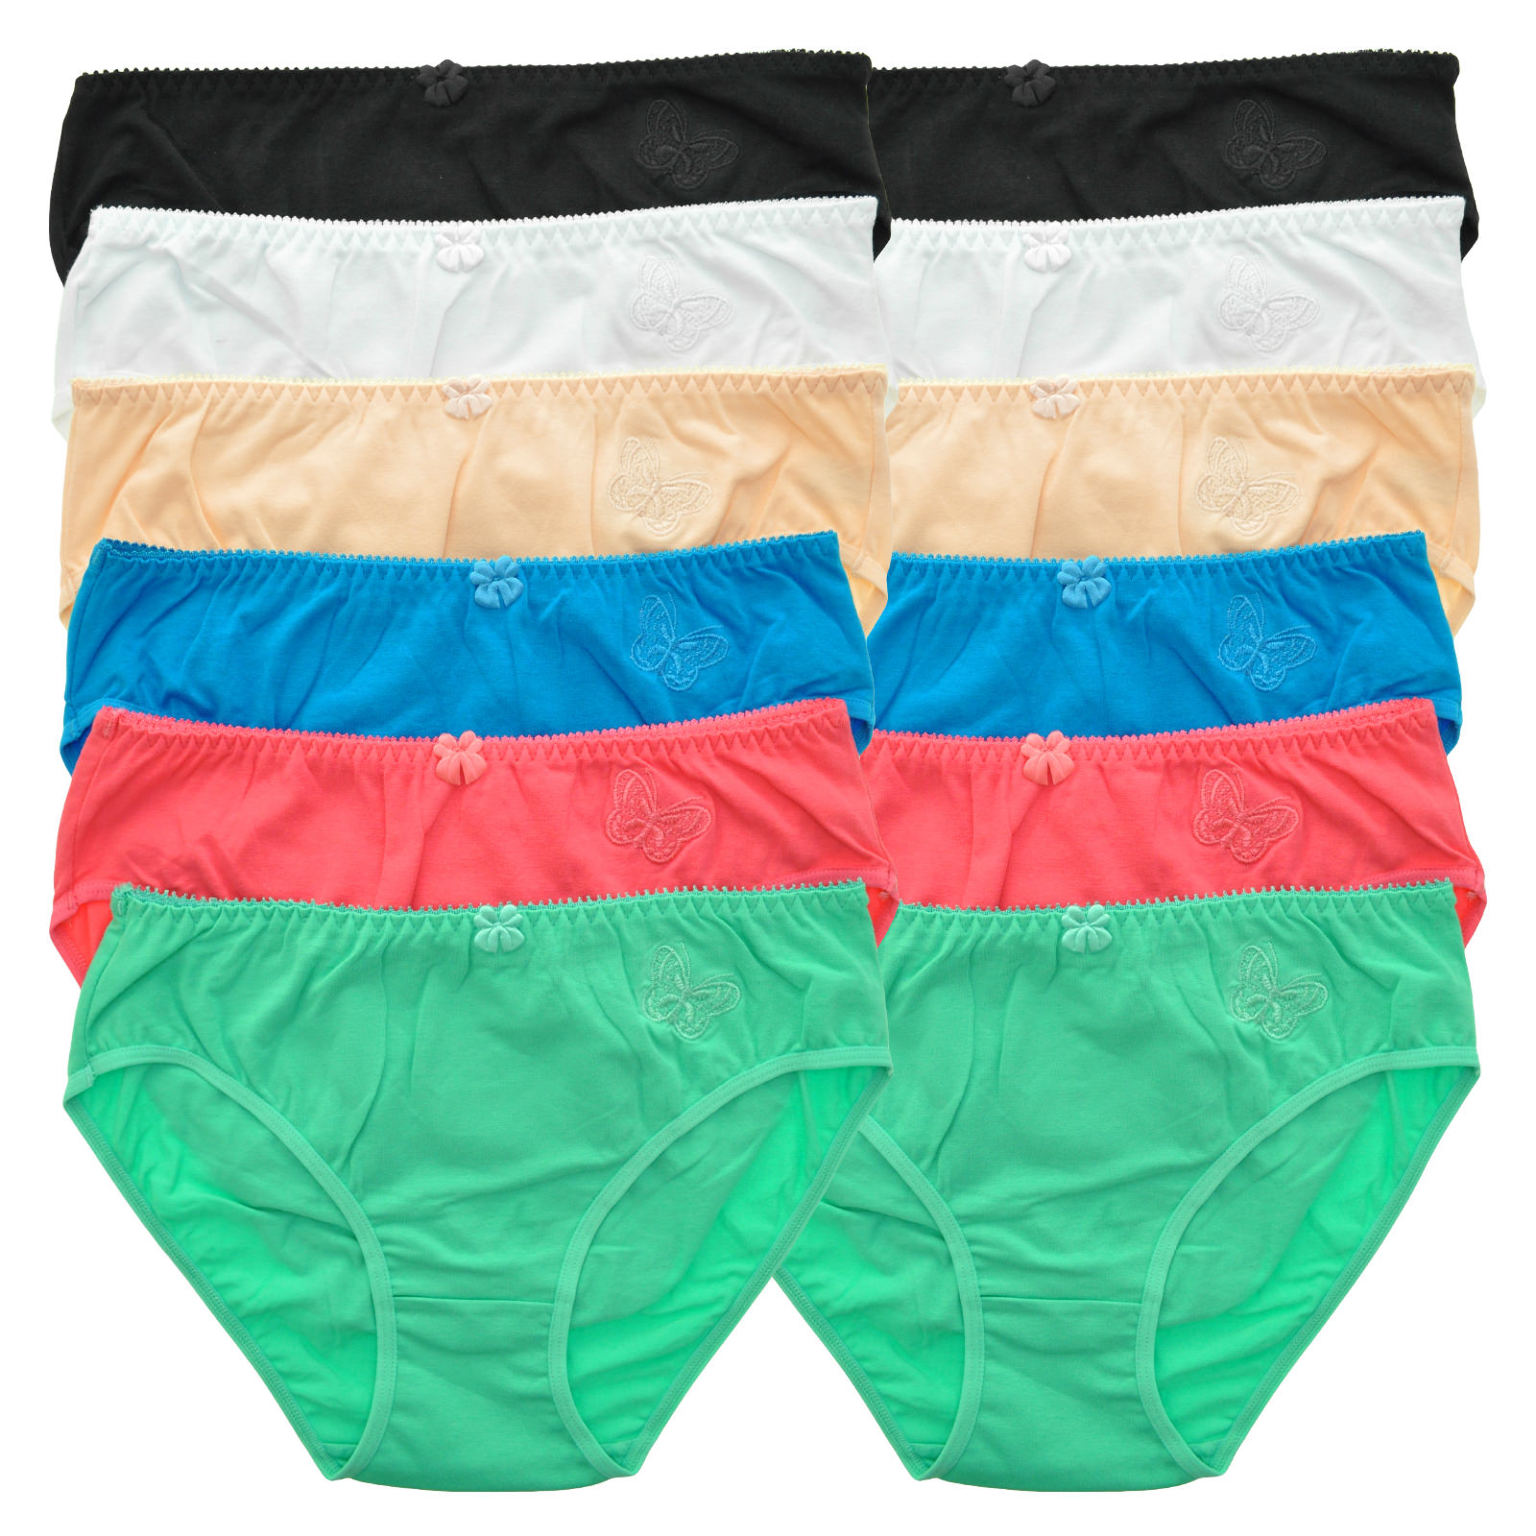 Wholesale Bikini Cut Butterfly Underwear - Assorted, S-XL